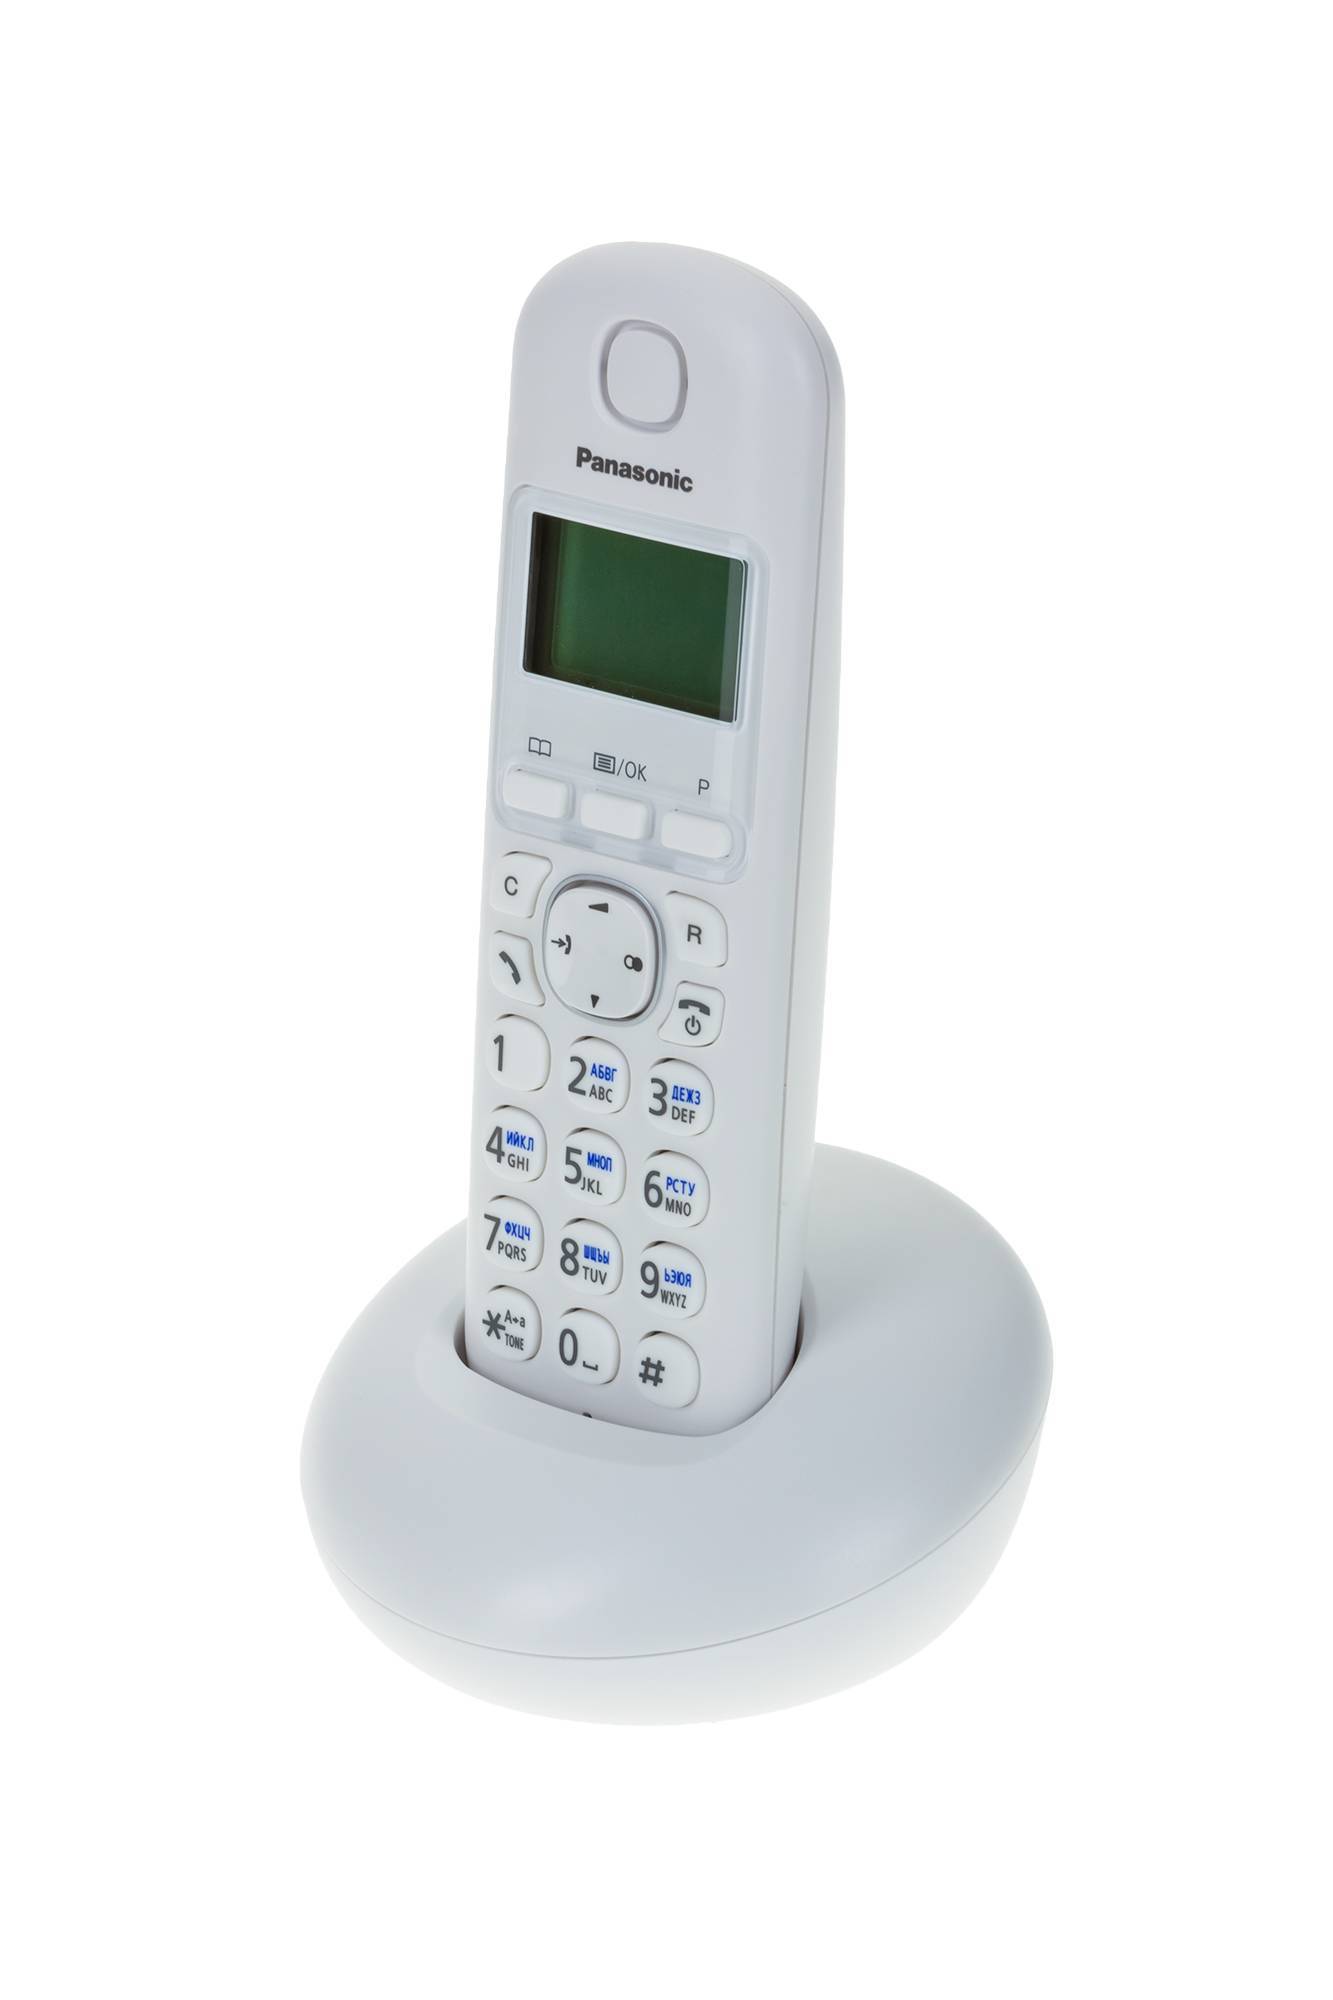 Москва купить беспроводной телефон. Panasonic KX-tgb210. Телефон Panasonic KX-tgb210. Панасоник 210 радиотелефон красный. Радиотелефон Панасоник белый.